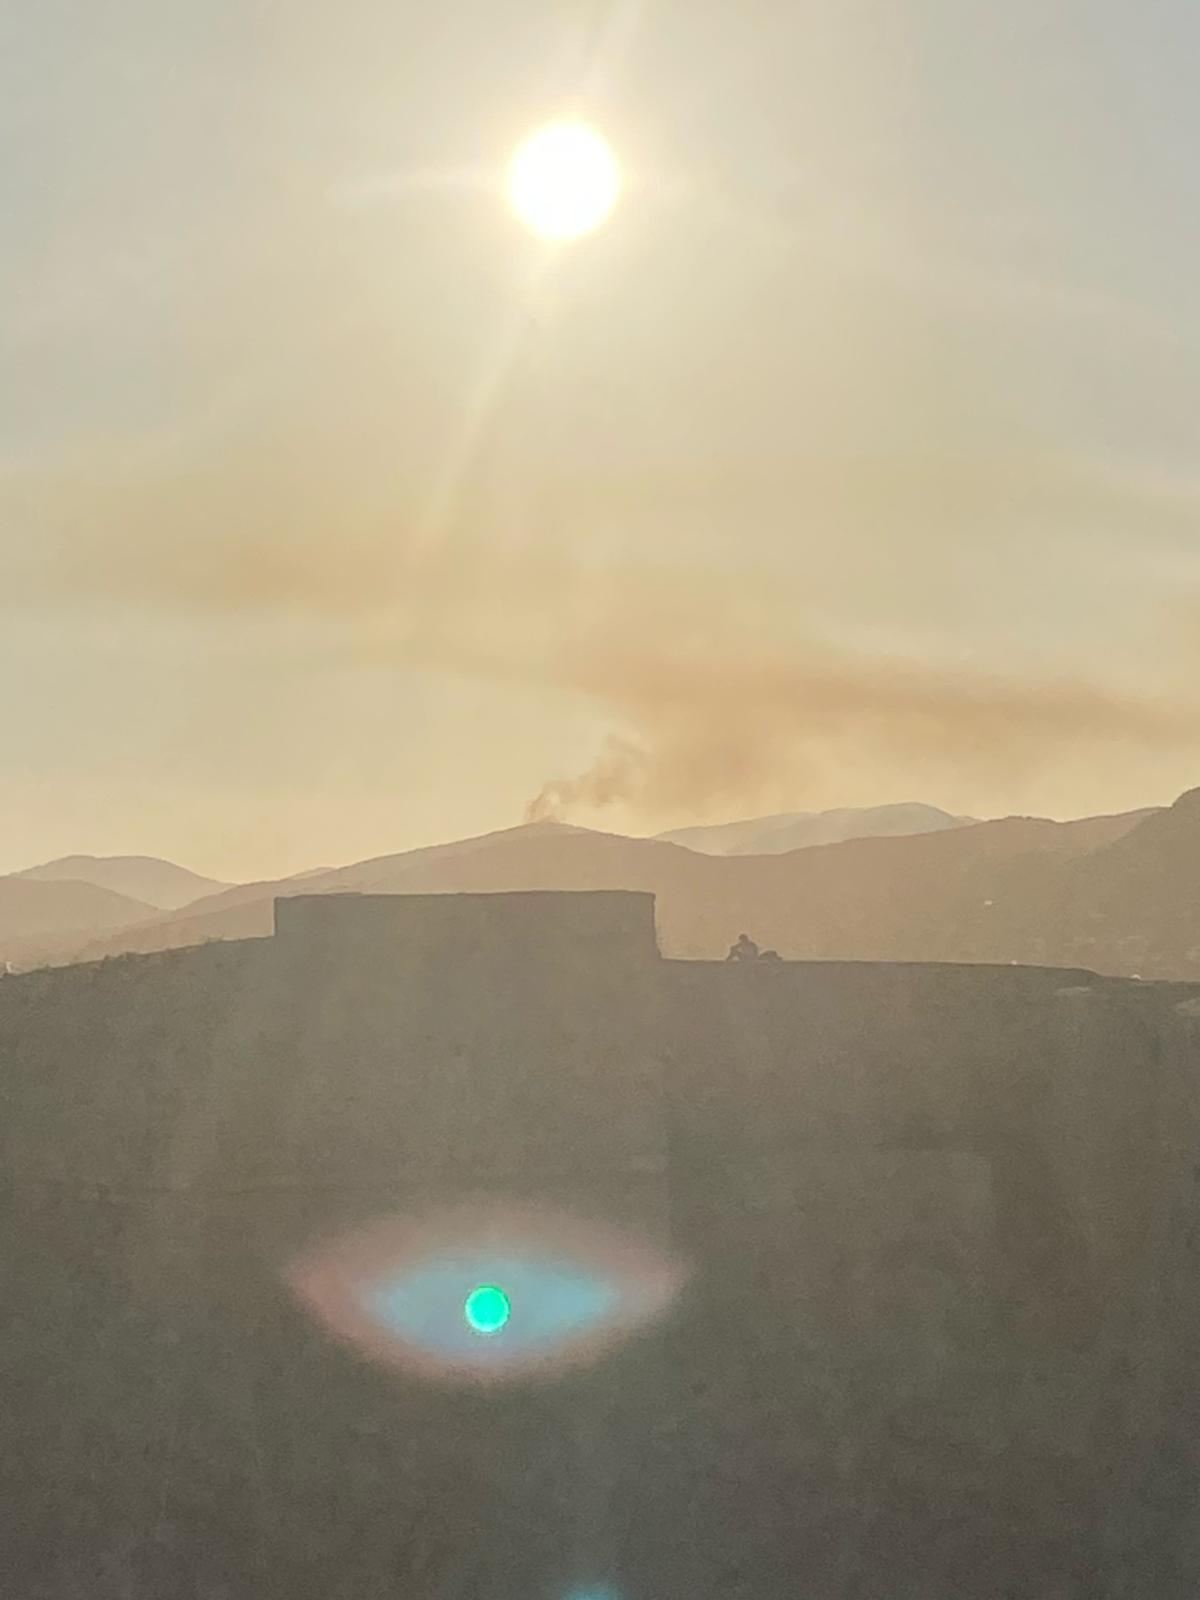 A Photo Of The Fire Taken From Dalt Vila